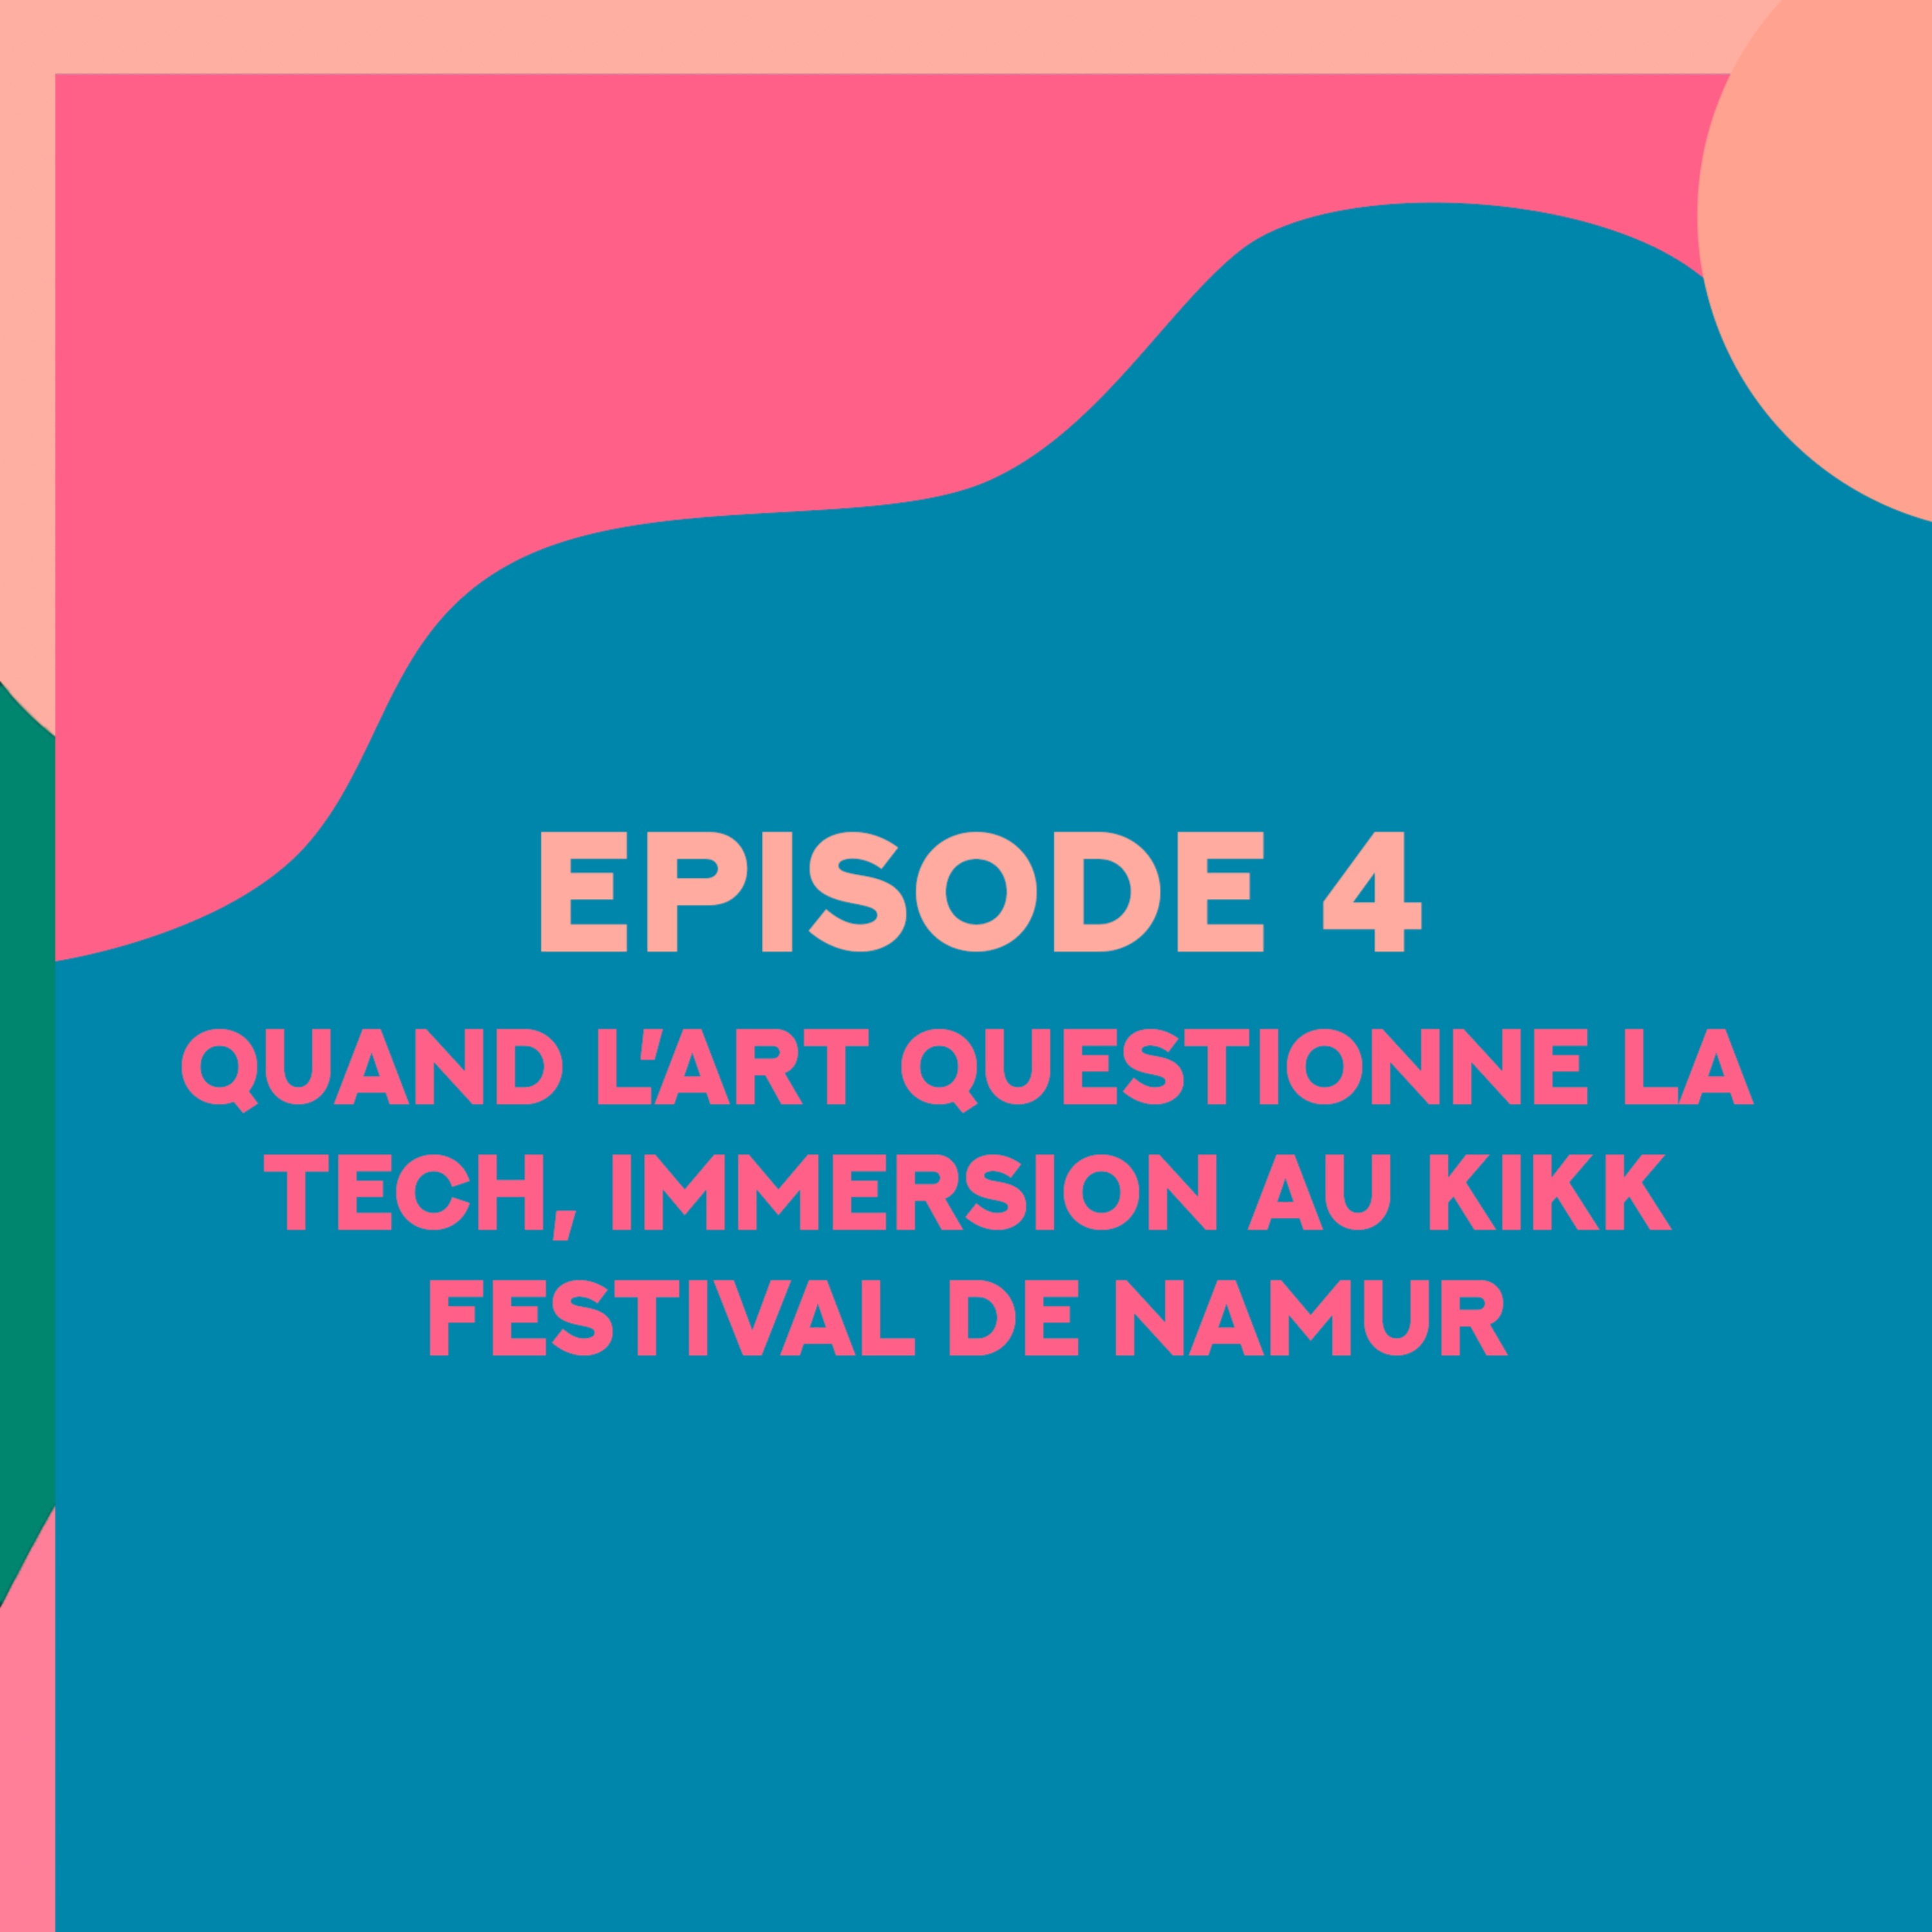 Quand l’art questionne la tech, immersion au kikk festival de Namur